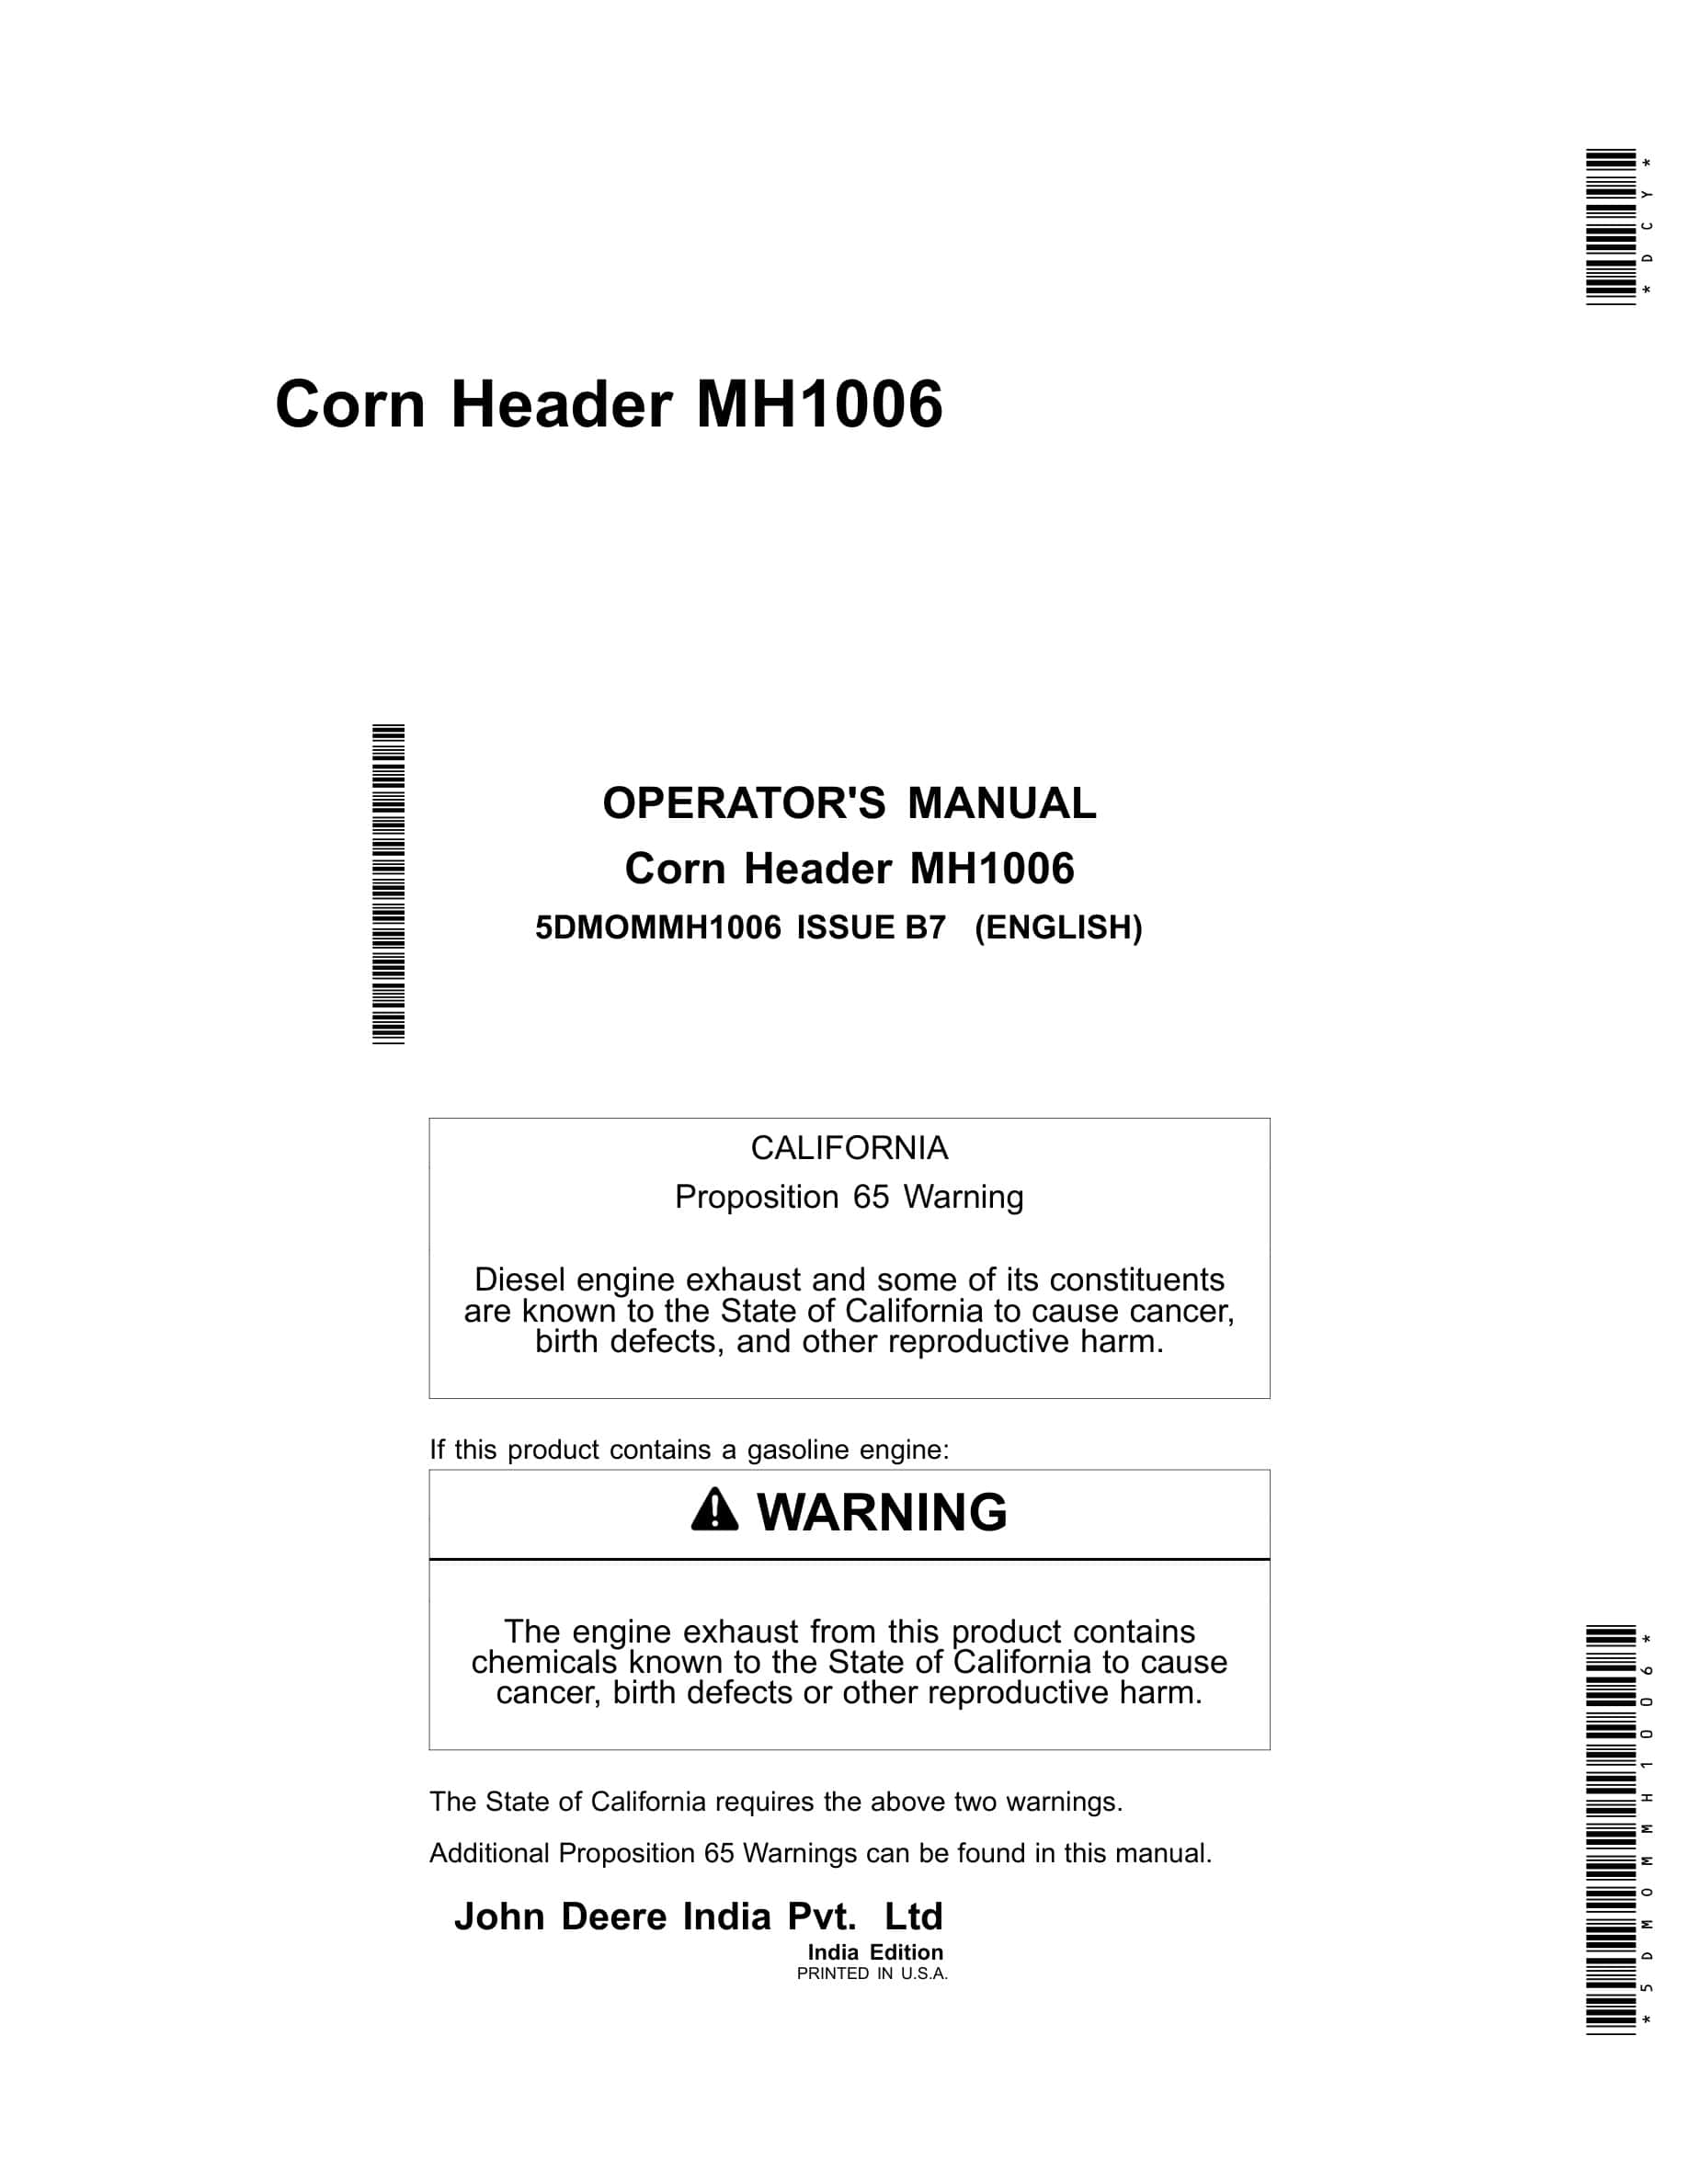 John Deere MH1006 Corn Header Operator Manual 5DMOMMH1006-1